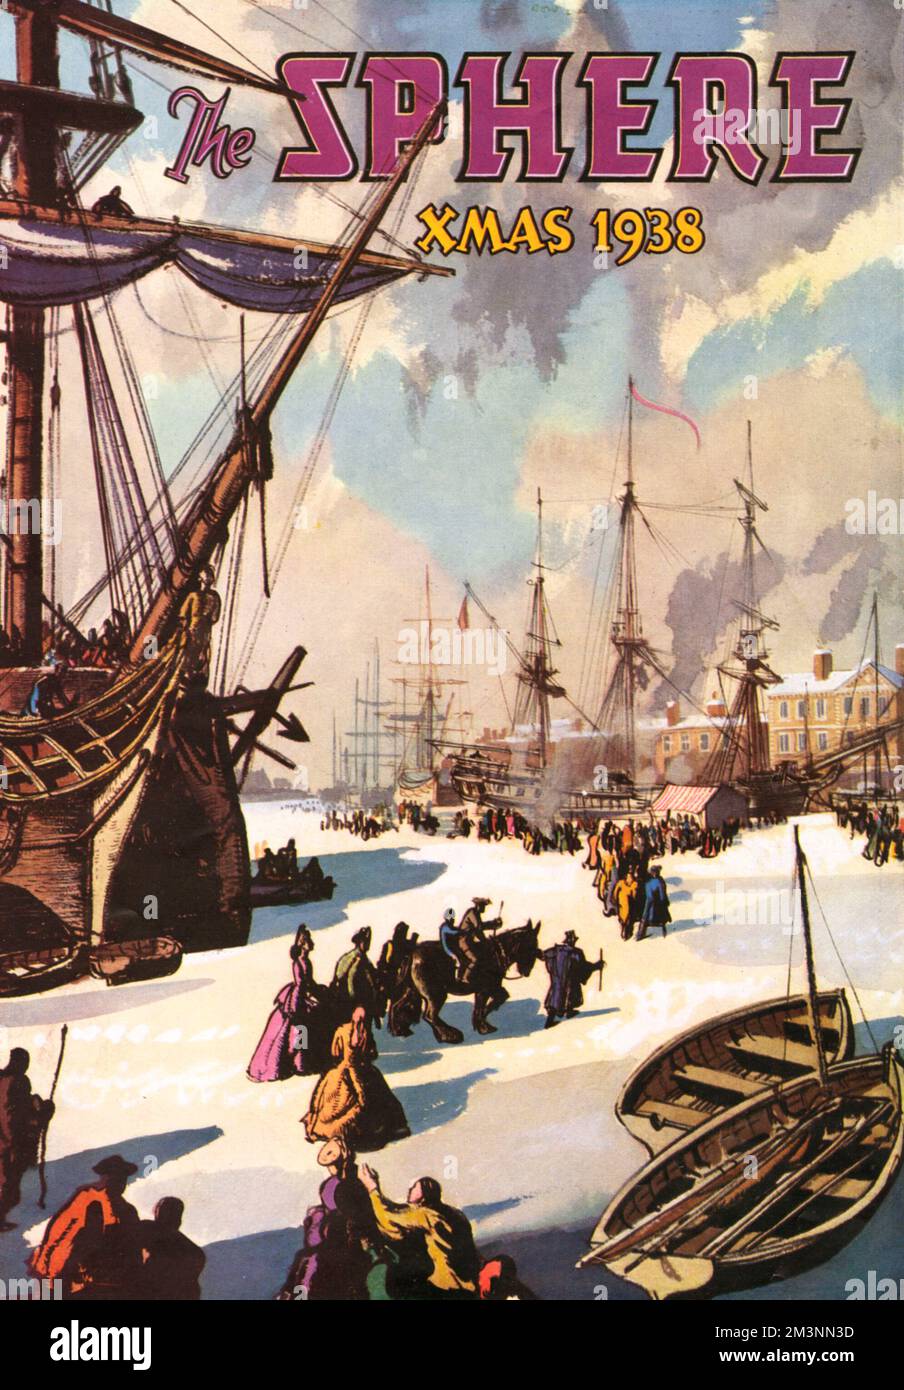 Titelseite des Magazins Sphere für Weihnachten 1938 mit einer Abbildung der Themse, die 1683 gefroren wurde. Der Fluss war lange genug gefroren, damit die berühmte Frostmesse stattfinden konnte, auf der sich Bauhalter und Entertainer auf dem Eis niederließen. Datum: 1938 Stockfoto